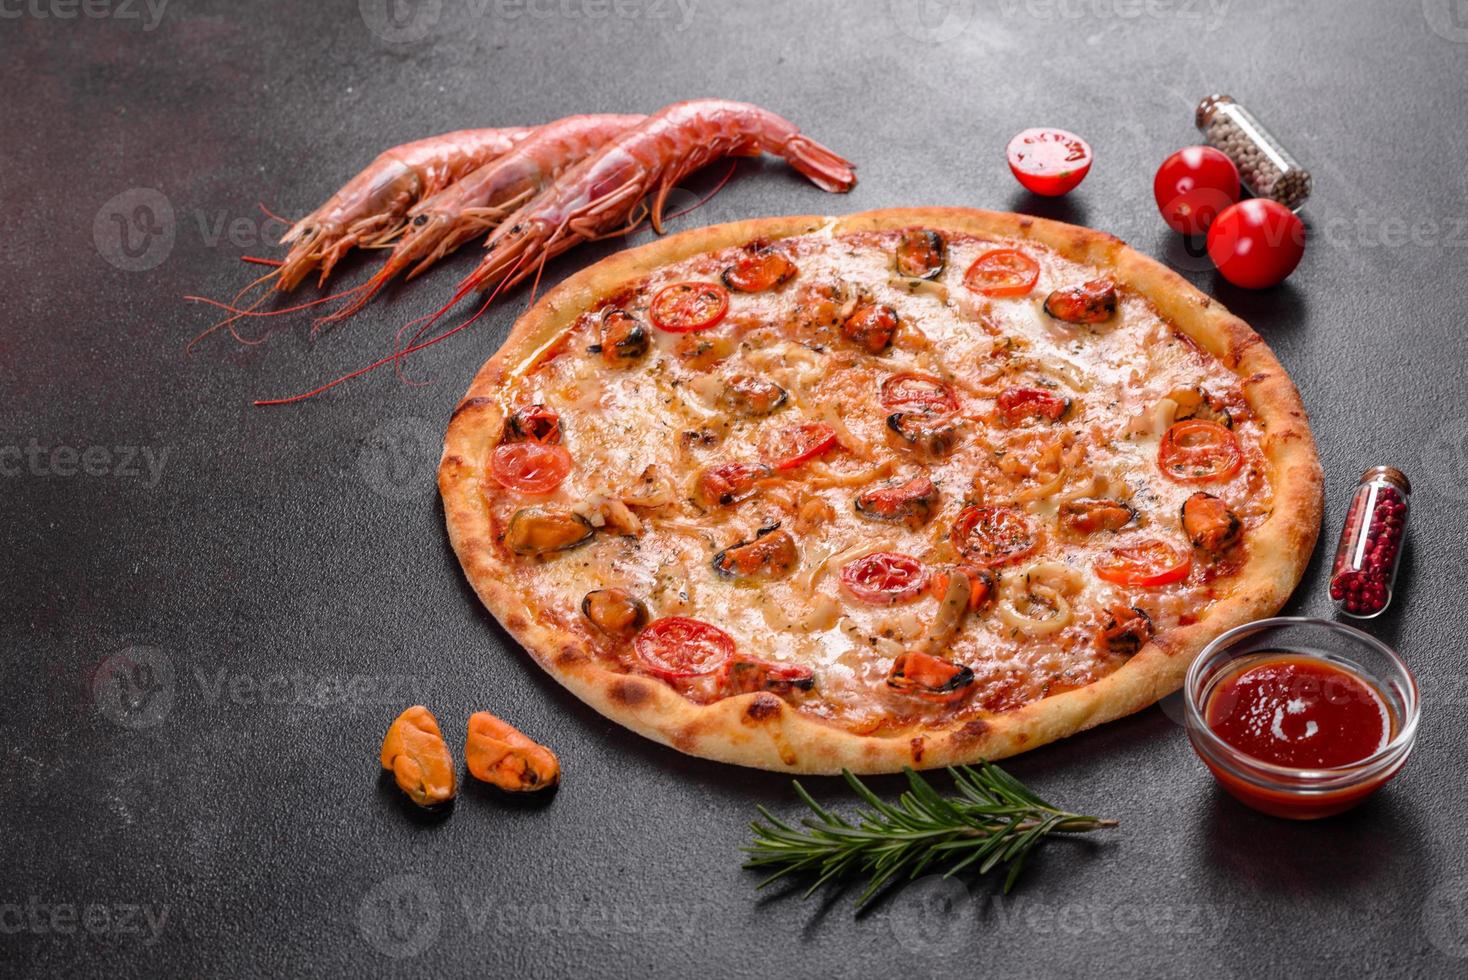 smakelijke gesneden pizza met zeevruchten en tomaat op een betonnen ondergrond foto